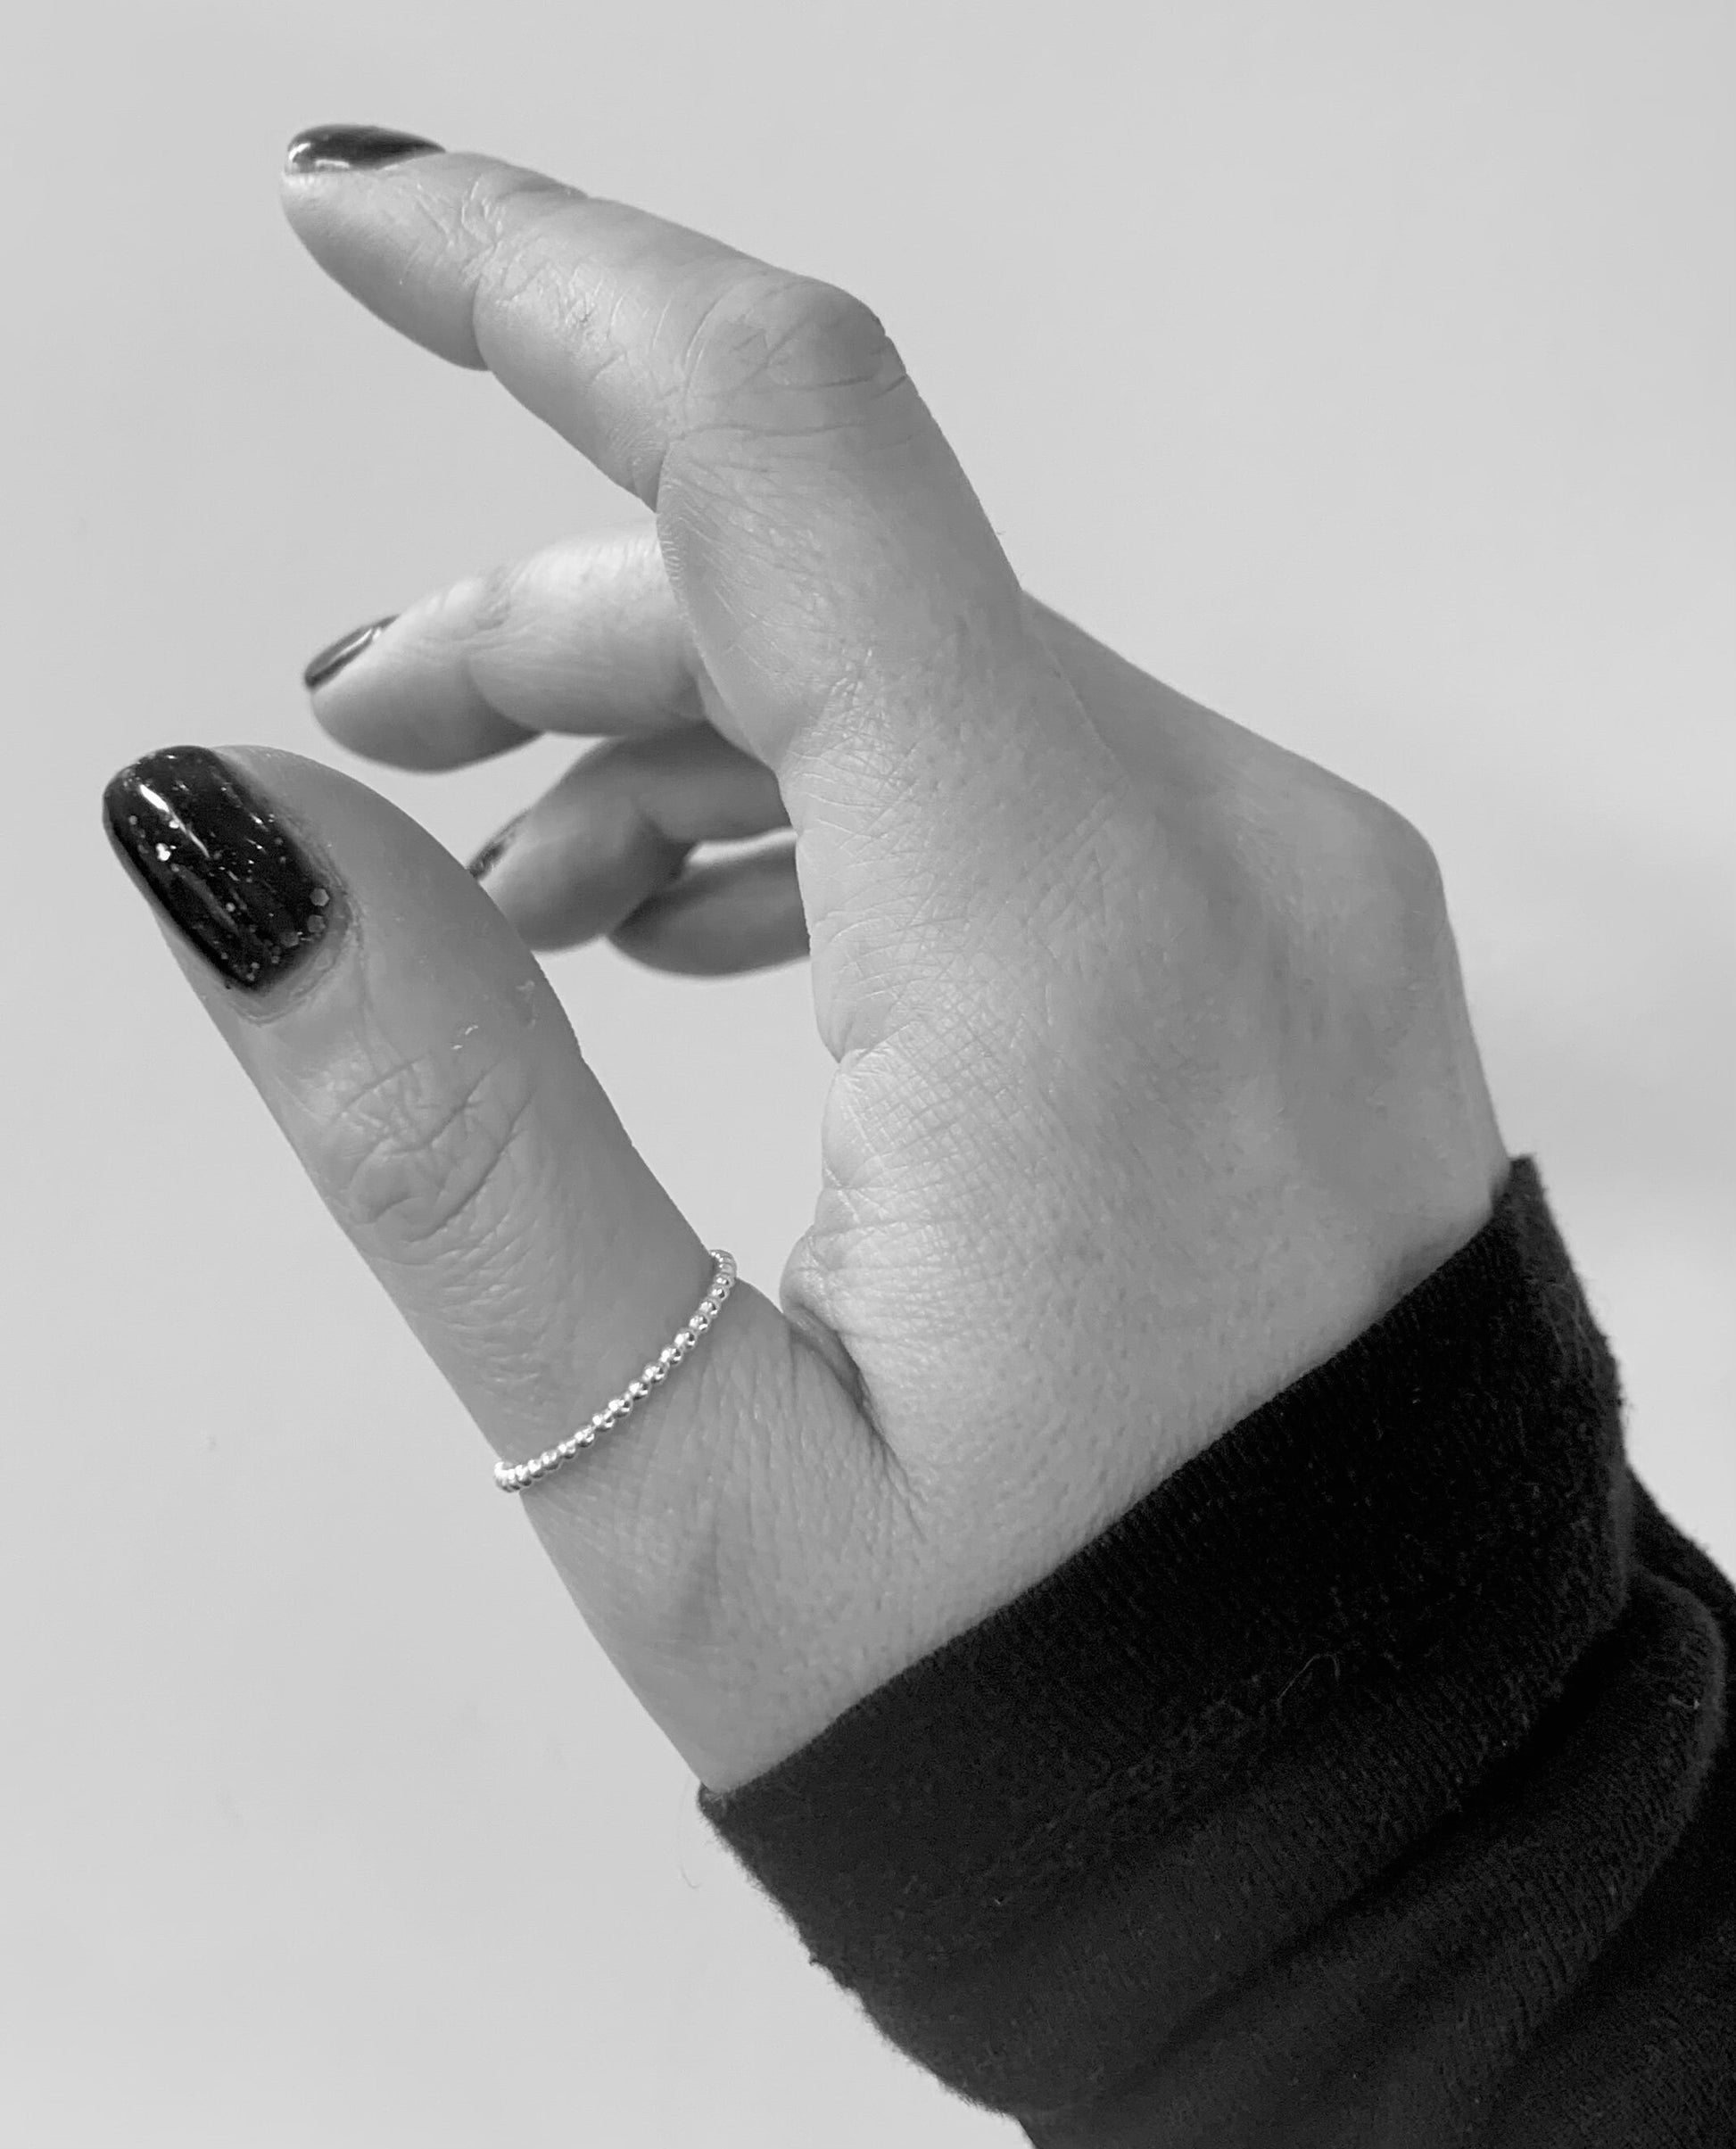 Silver thumb ring